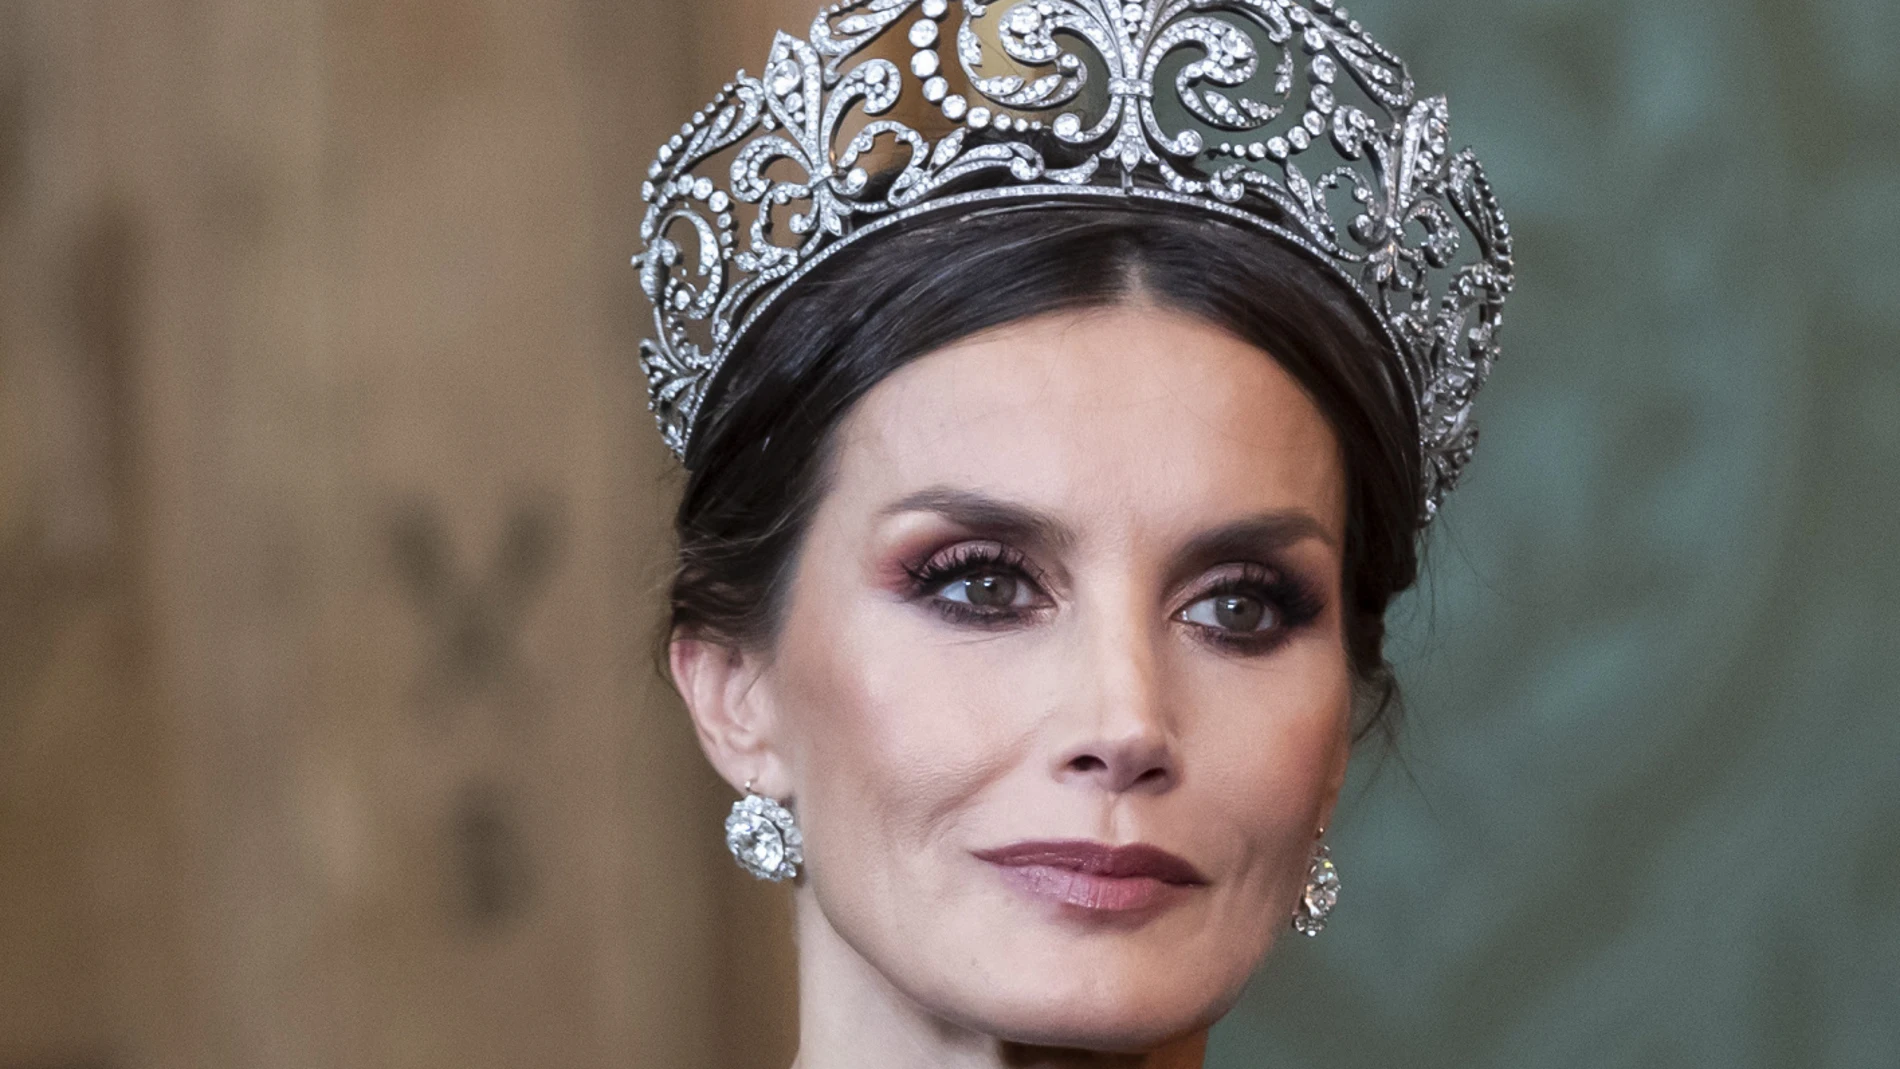 La Tiara de Lis es la más representativa de la Casa Borbón, y la reina Letizia la lució hace poco conmovido de su viaje oficial a Suecia